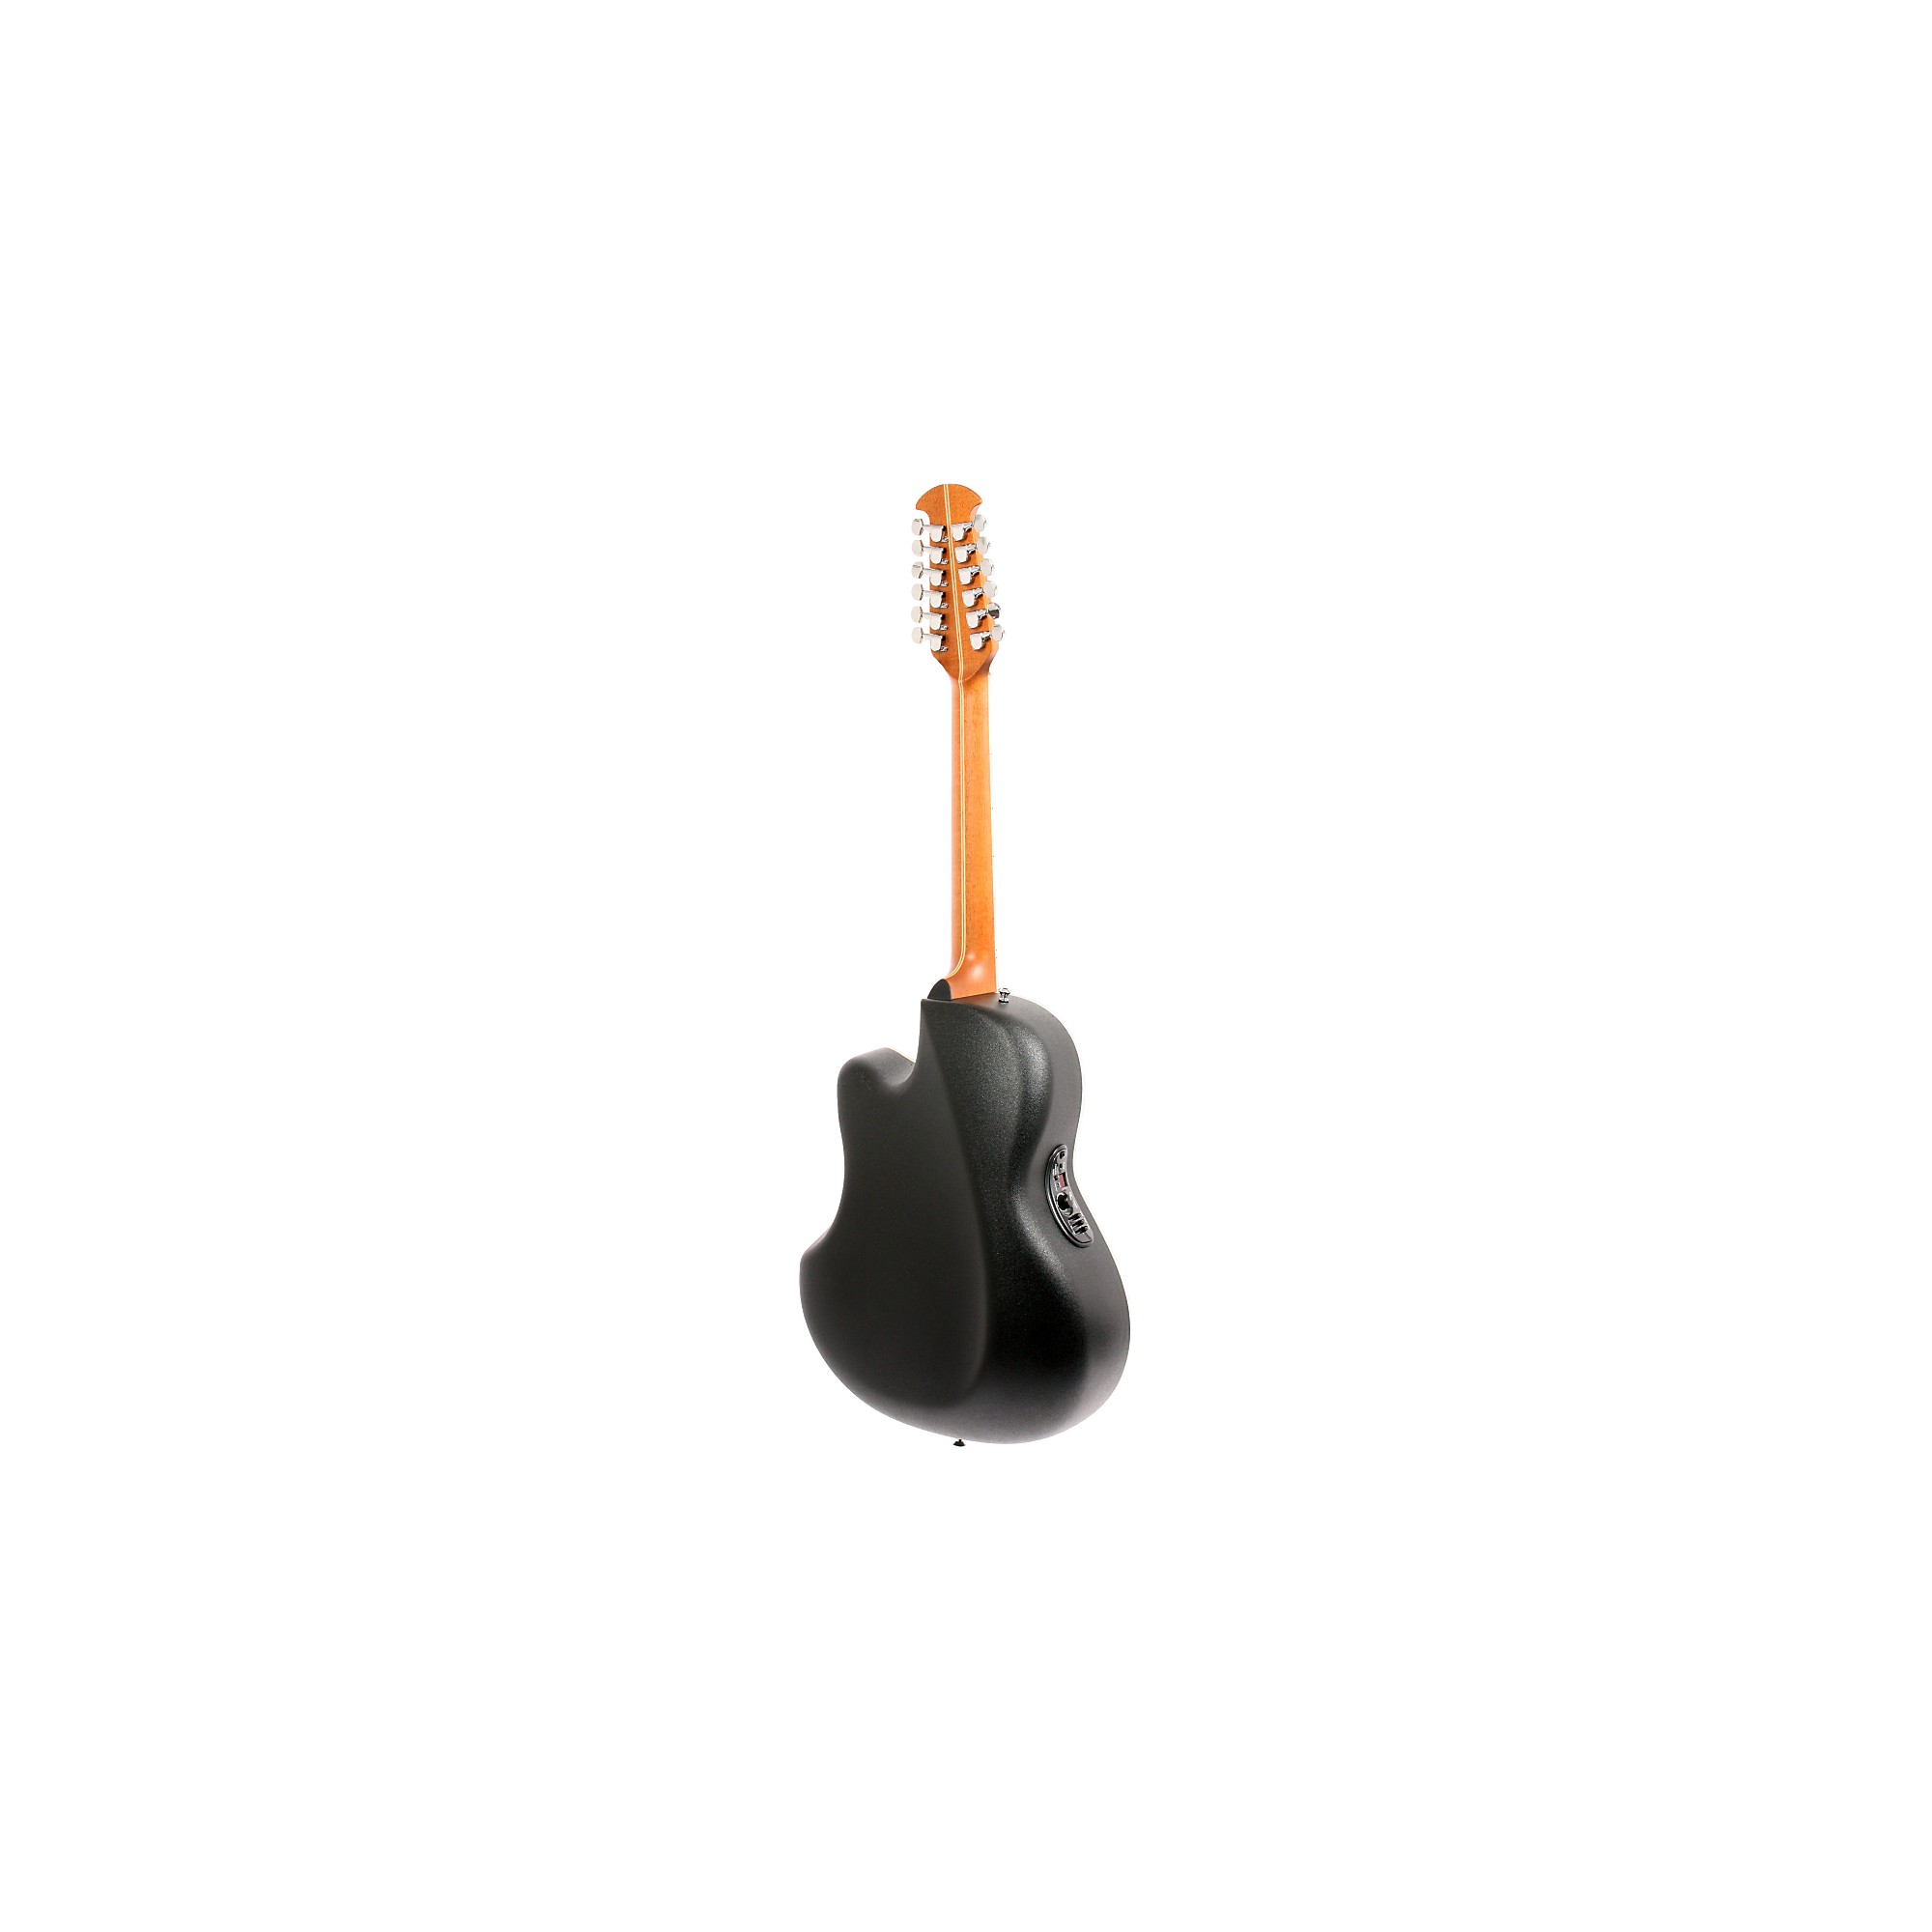 Ovation Standard Balladeer 2751 AX 12-струнная акусто-электрическая гитара, черная электроакустическая гитара ovation standard balladeer 2771ax 1 sunburst